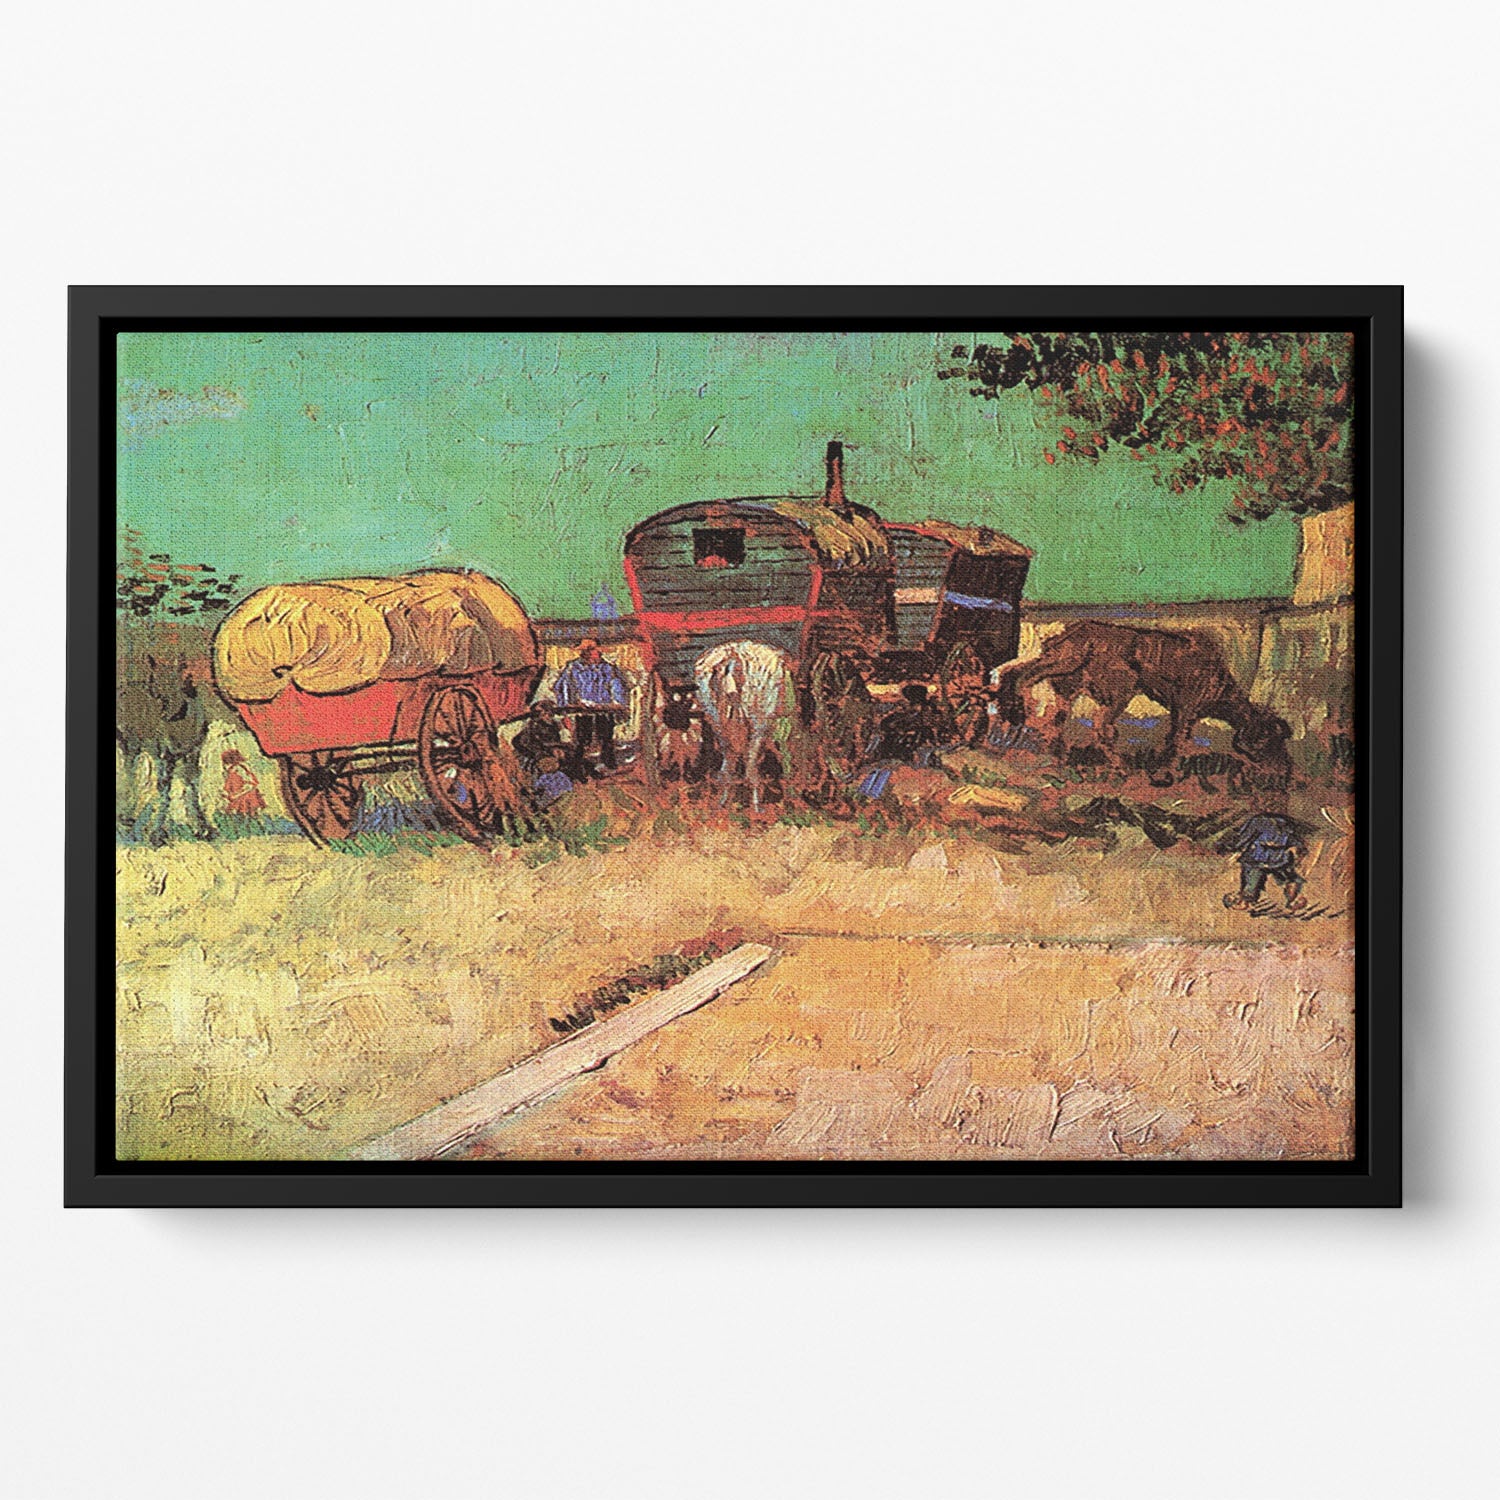 Encampment of Gypsies with Caravans by Van Gogh Floating Framed Canvas